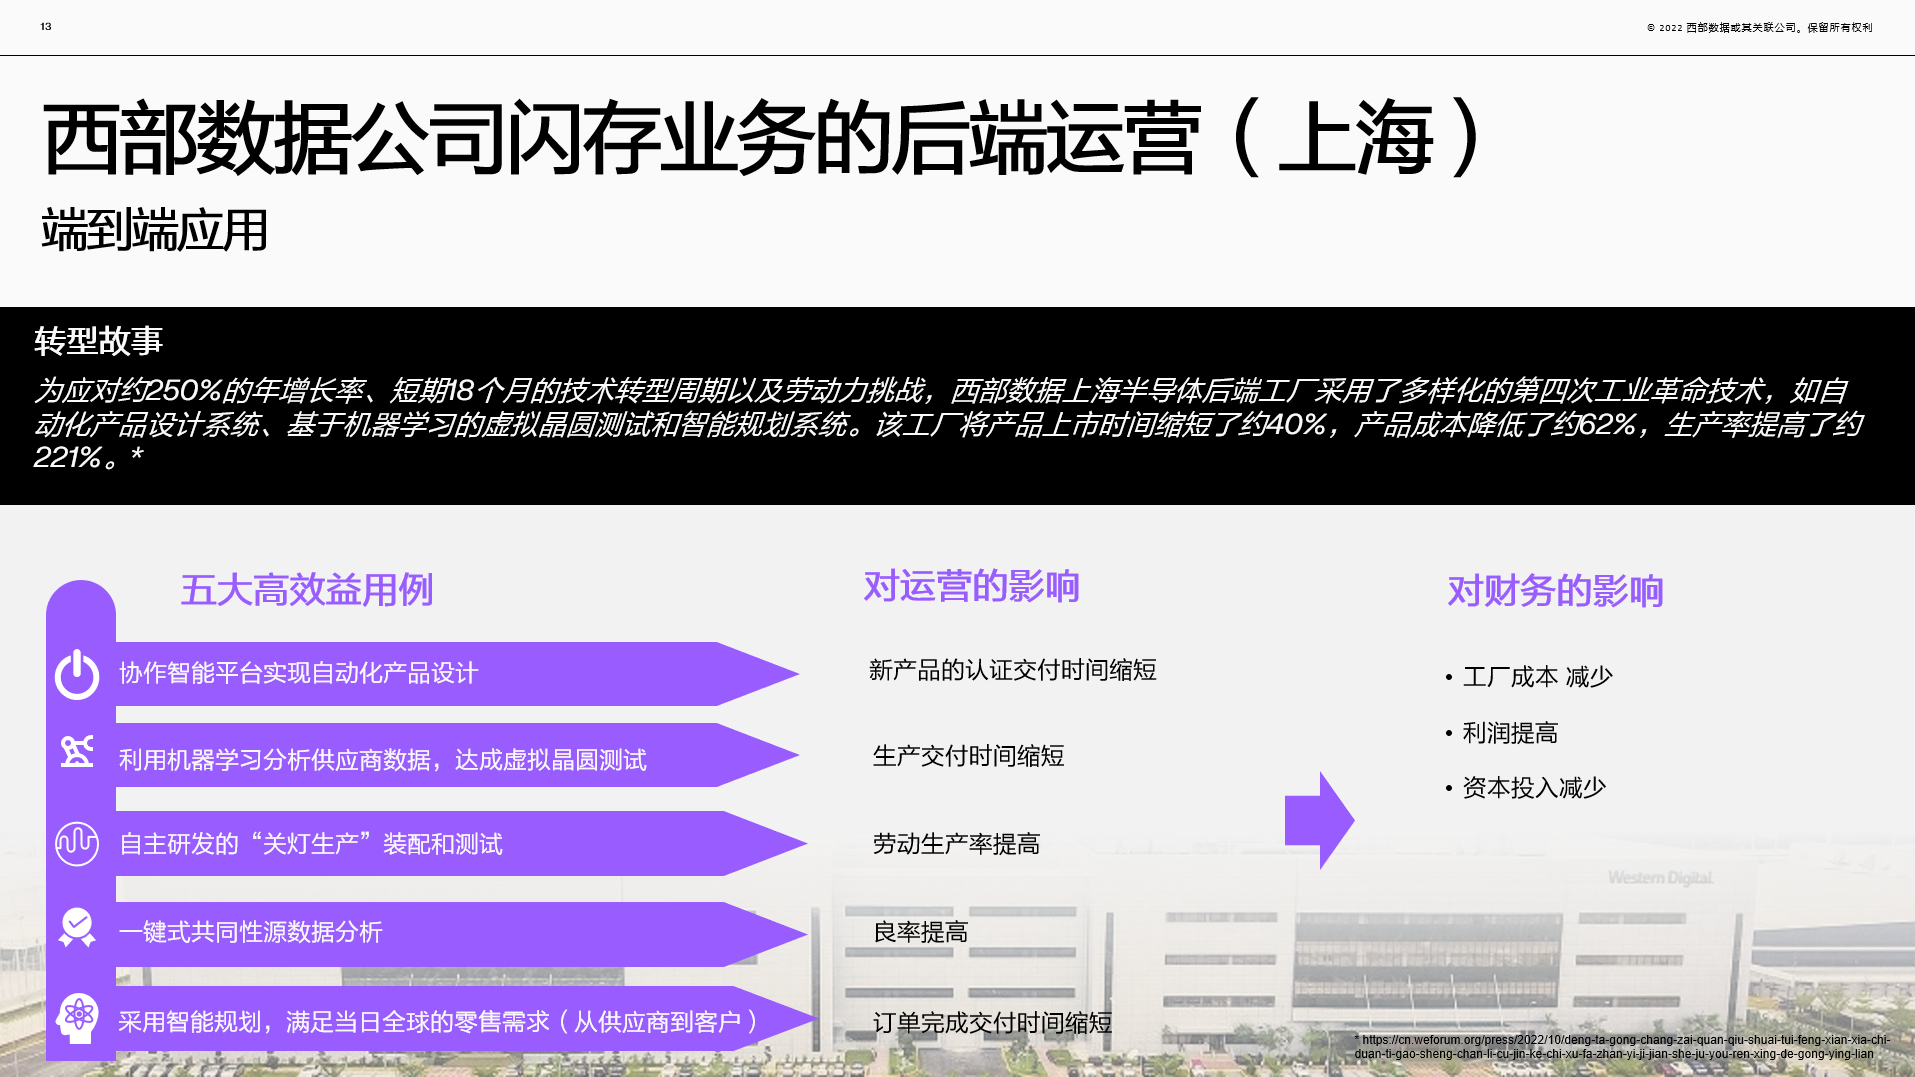 中国首家“可持续发展灯塔工厂”花落西部数据上海工厂，为工业4.0落地提供参考方案-灯塔工厂官网1